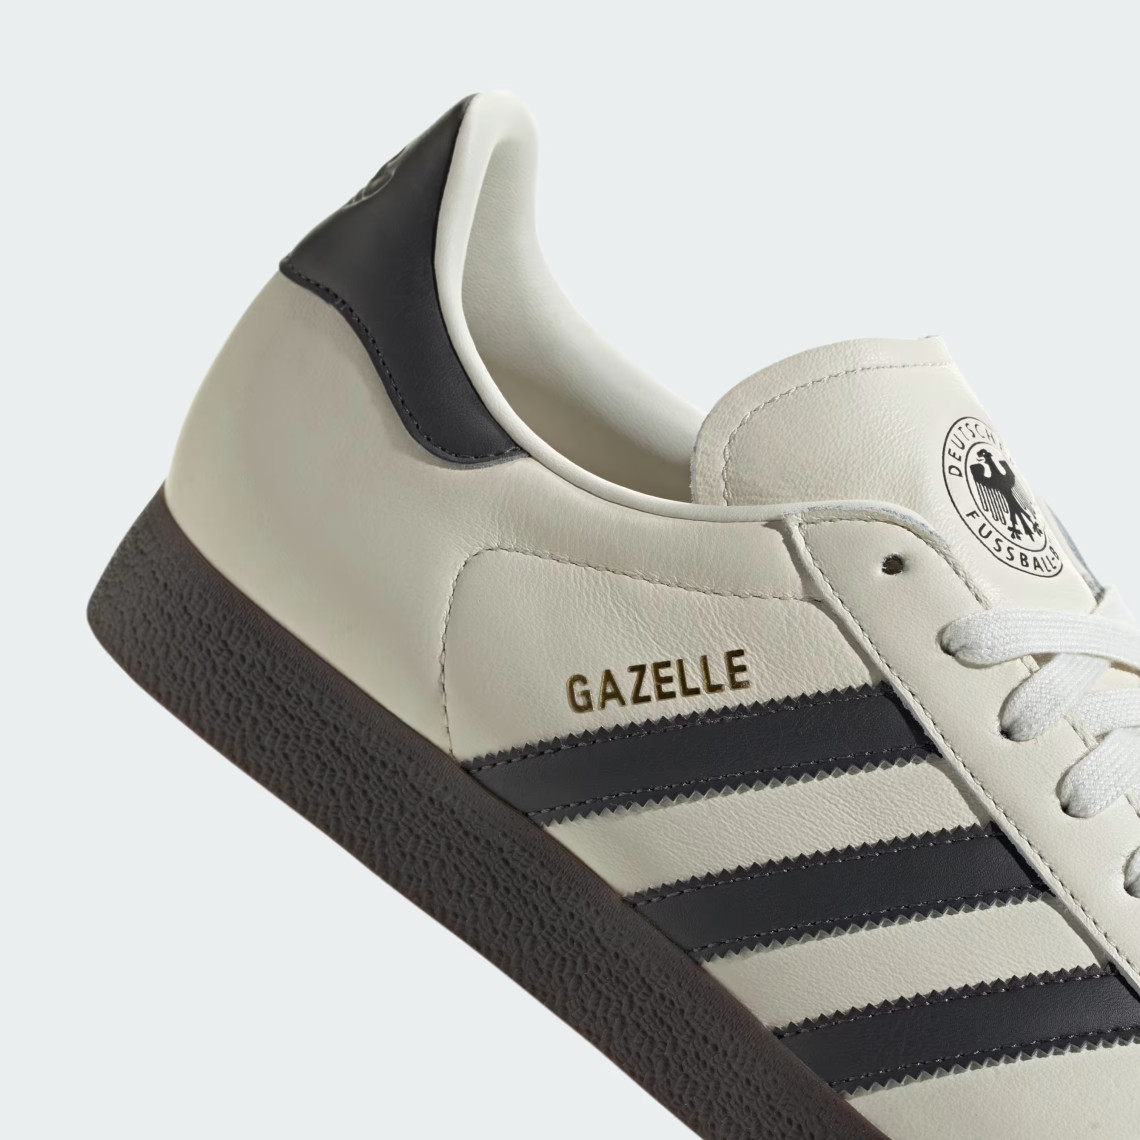 Adidas Originals Gazelle Germany Id3719 07